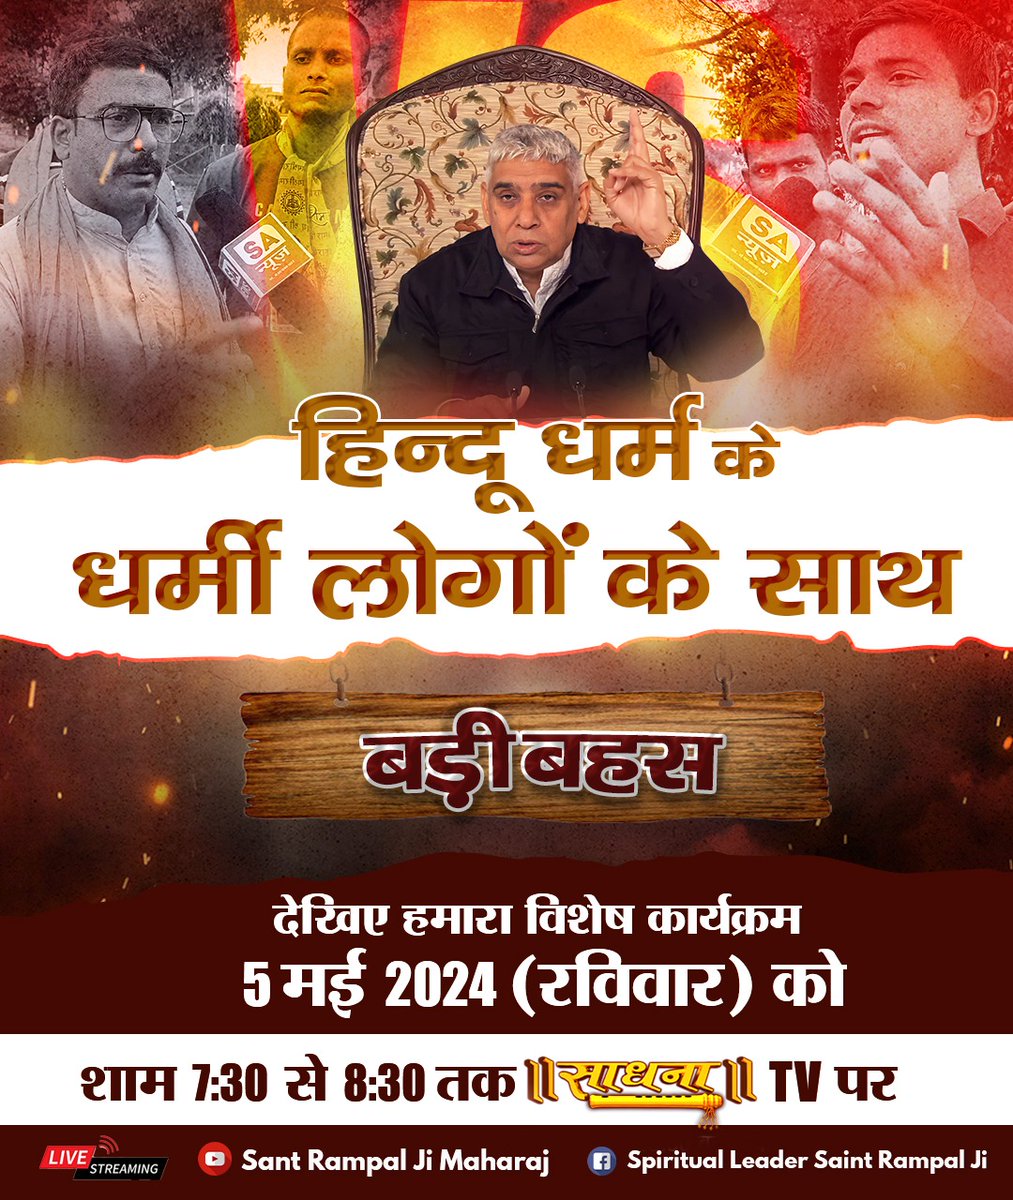 #अविनाशी_परमात्मा_कबीर
अहवेद मंडल 9 सूक्त 82 मंत्र 1 में बताया है सबकी रचना करने वाला परमात्मा राजा के समान दर्शनीय है, वह दृढ़ भक्तों को मिलता है।
Sant Rampal Ji Maharaj Live ⤵️
twitter.com/i/broadcasts/1…